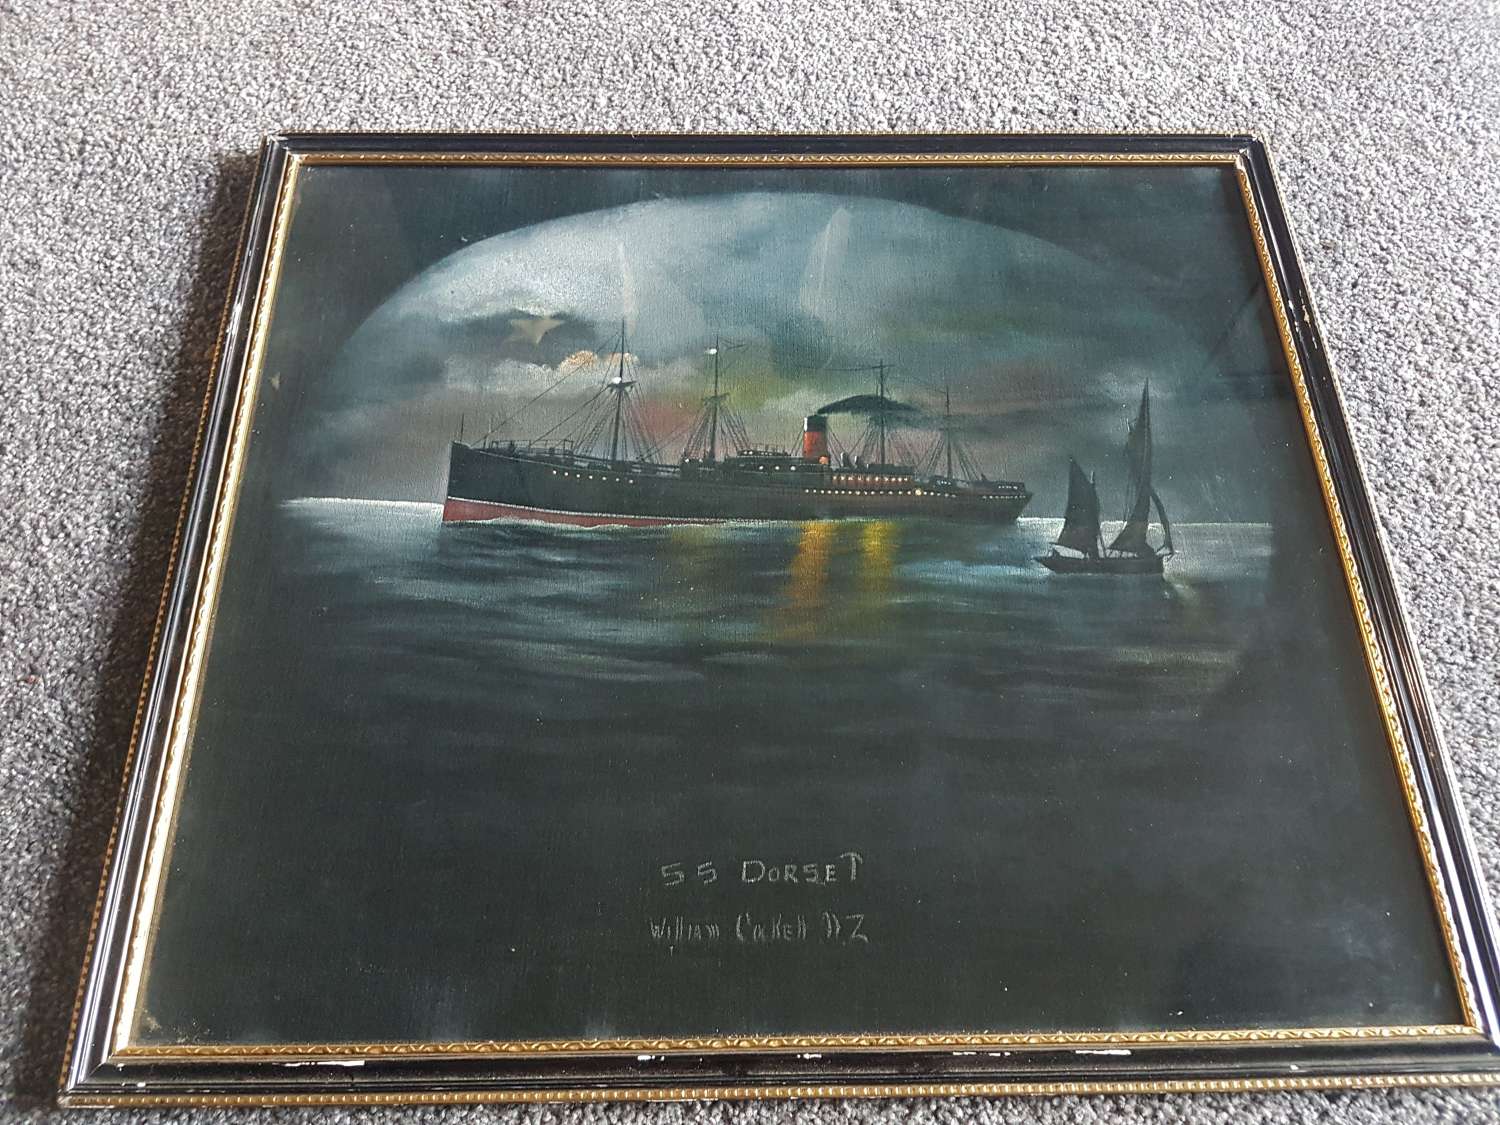 Oil on Velvet by William Cockell of SS Dorset